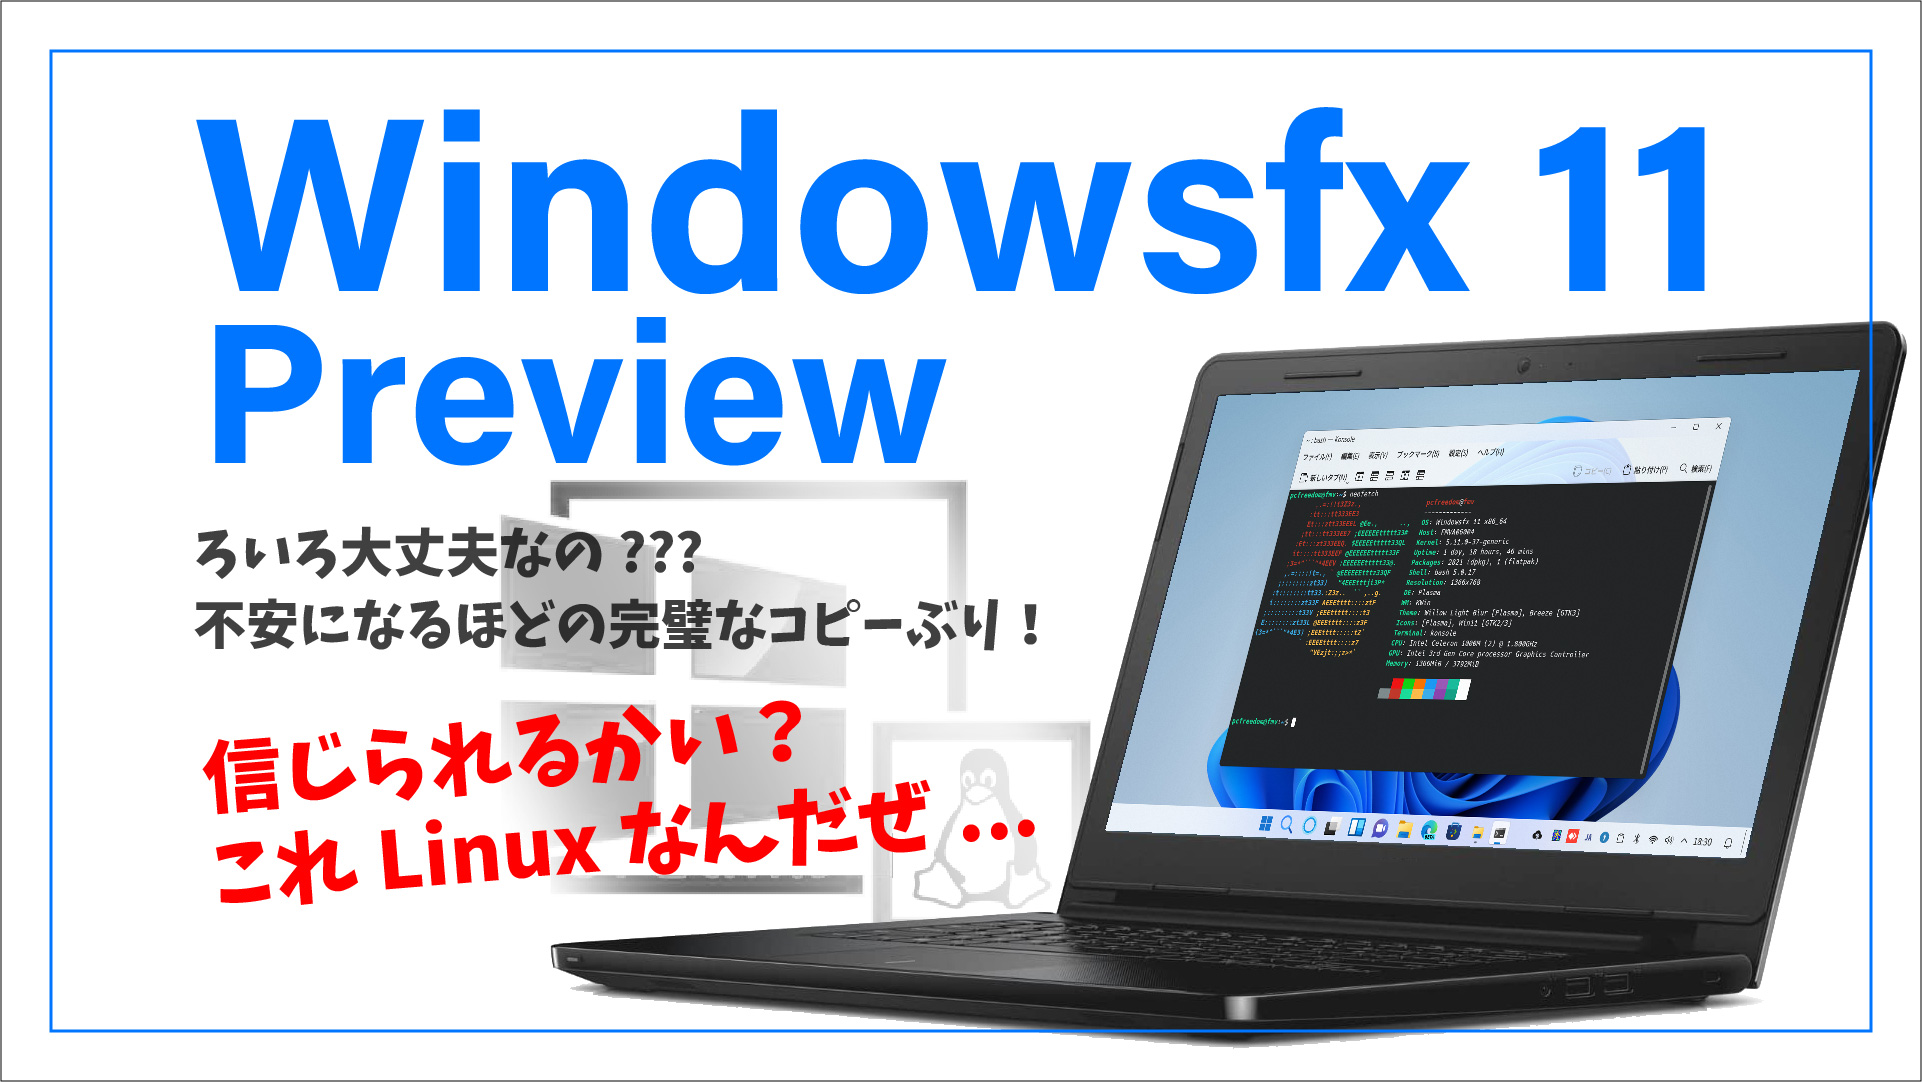 【WindowsのコピーOS？】Windowsfx 11 Preview いろいろ大丈夫なのか心配になるほどの完璧なコピーっぷりがスゴい！